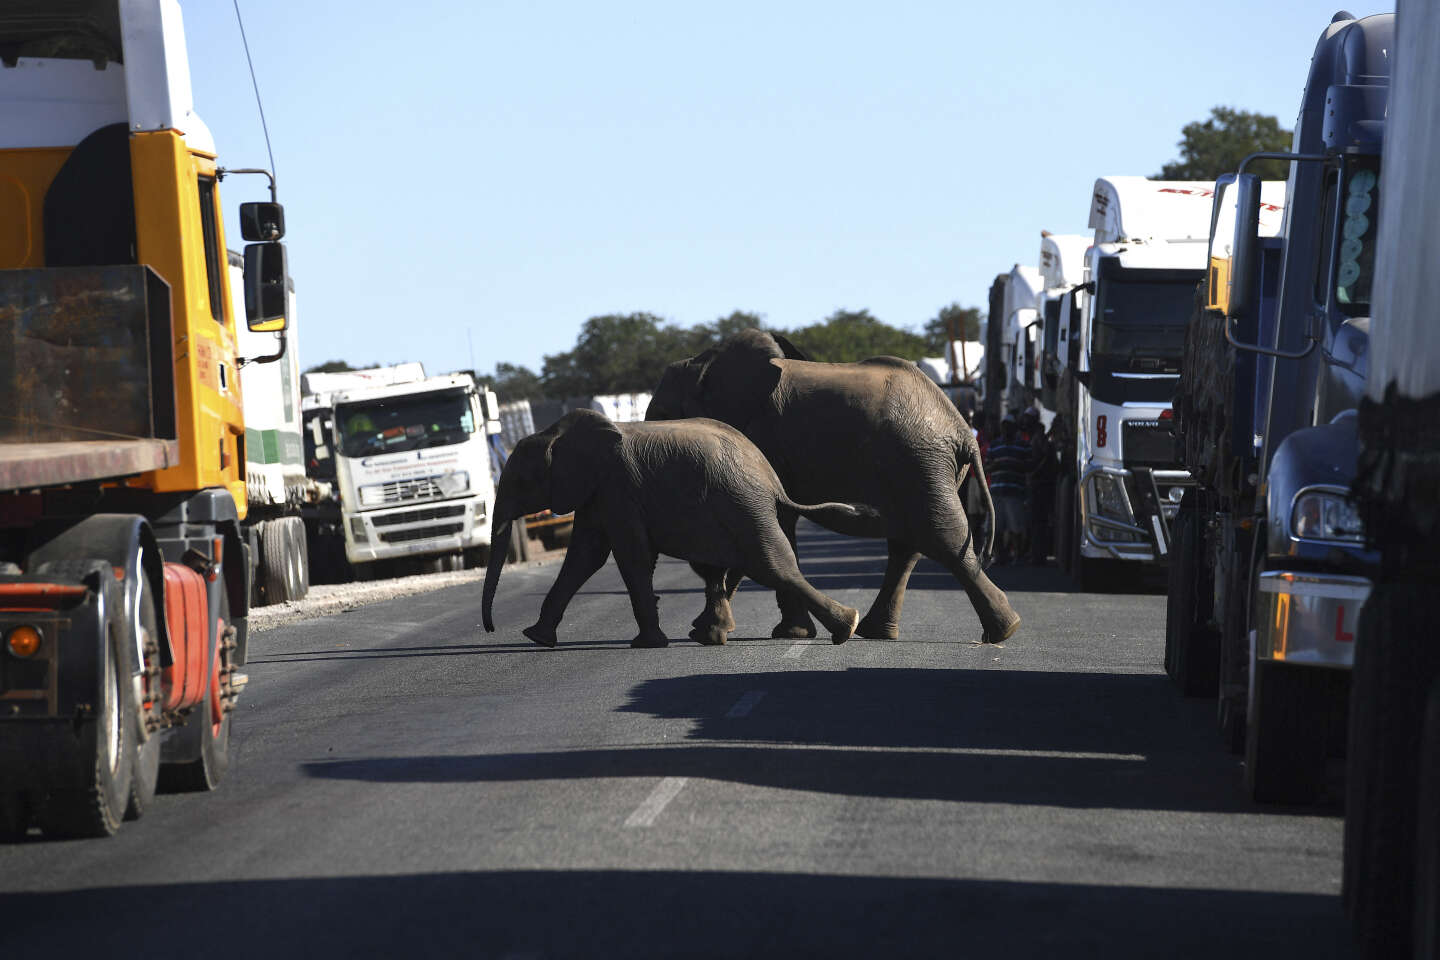 Le président du Botswana menace d’envoyer 20 000 éléphants à l’Allemagne